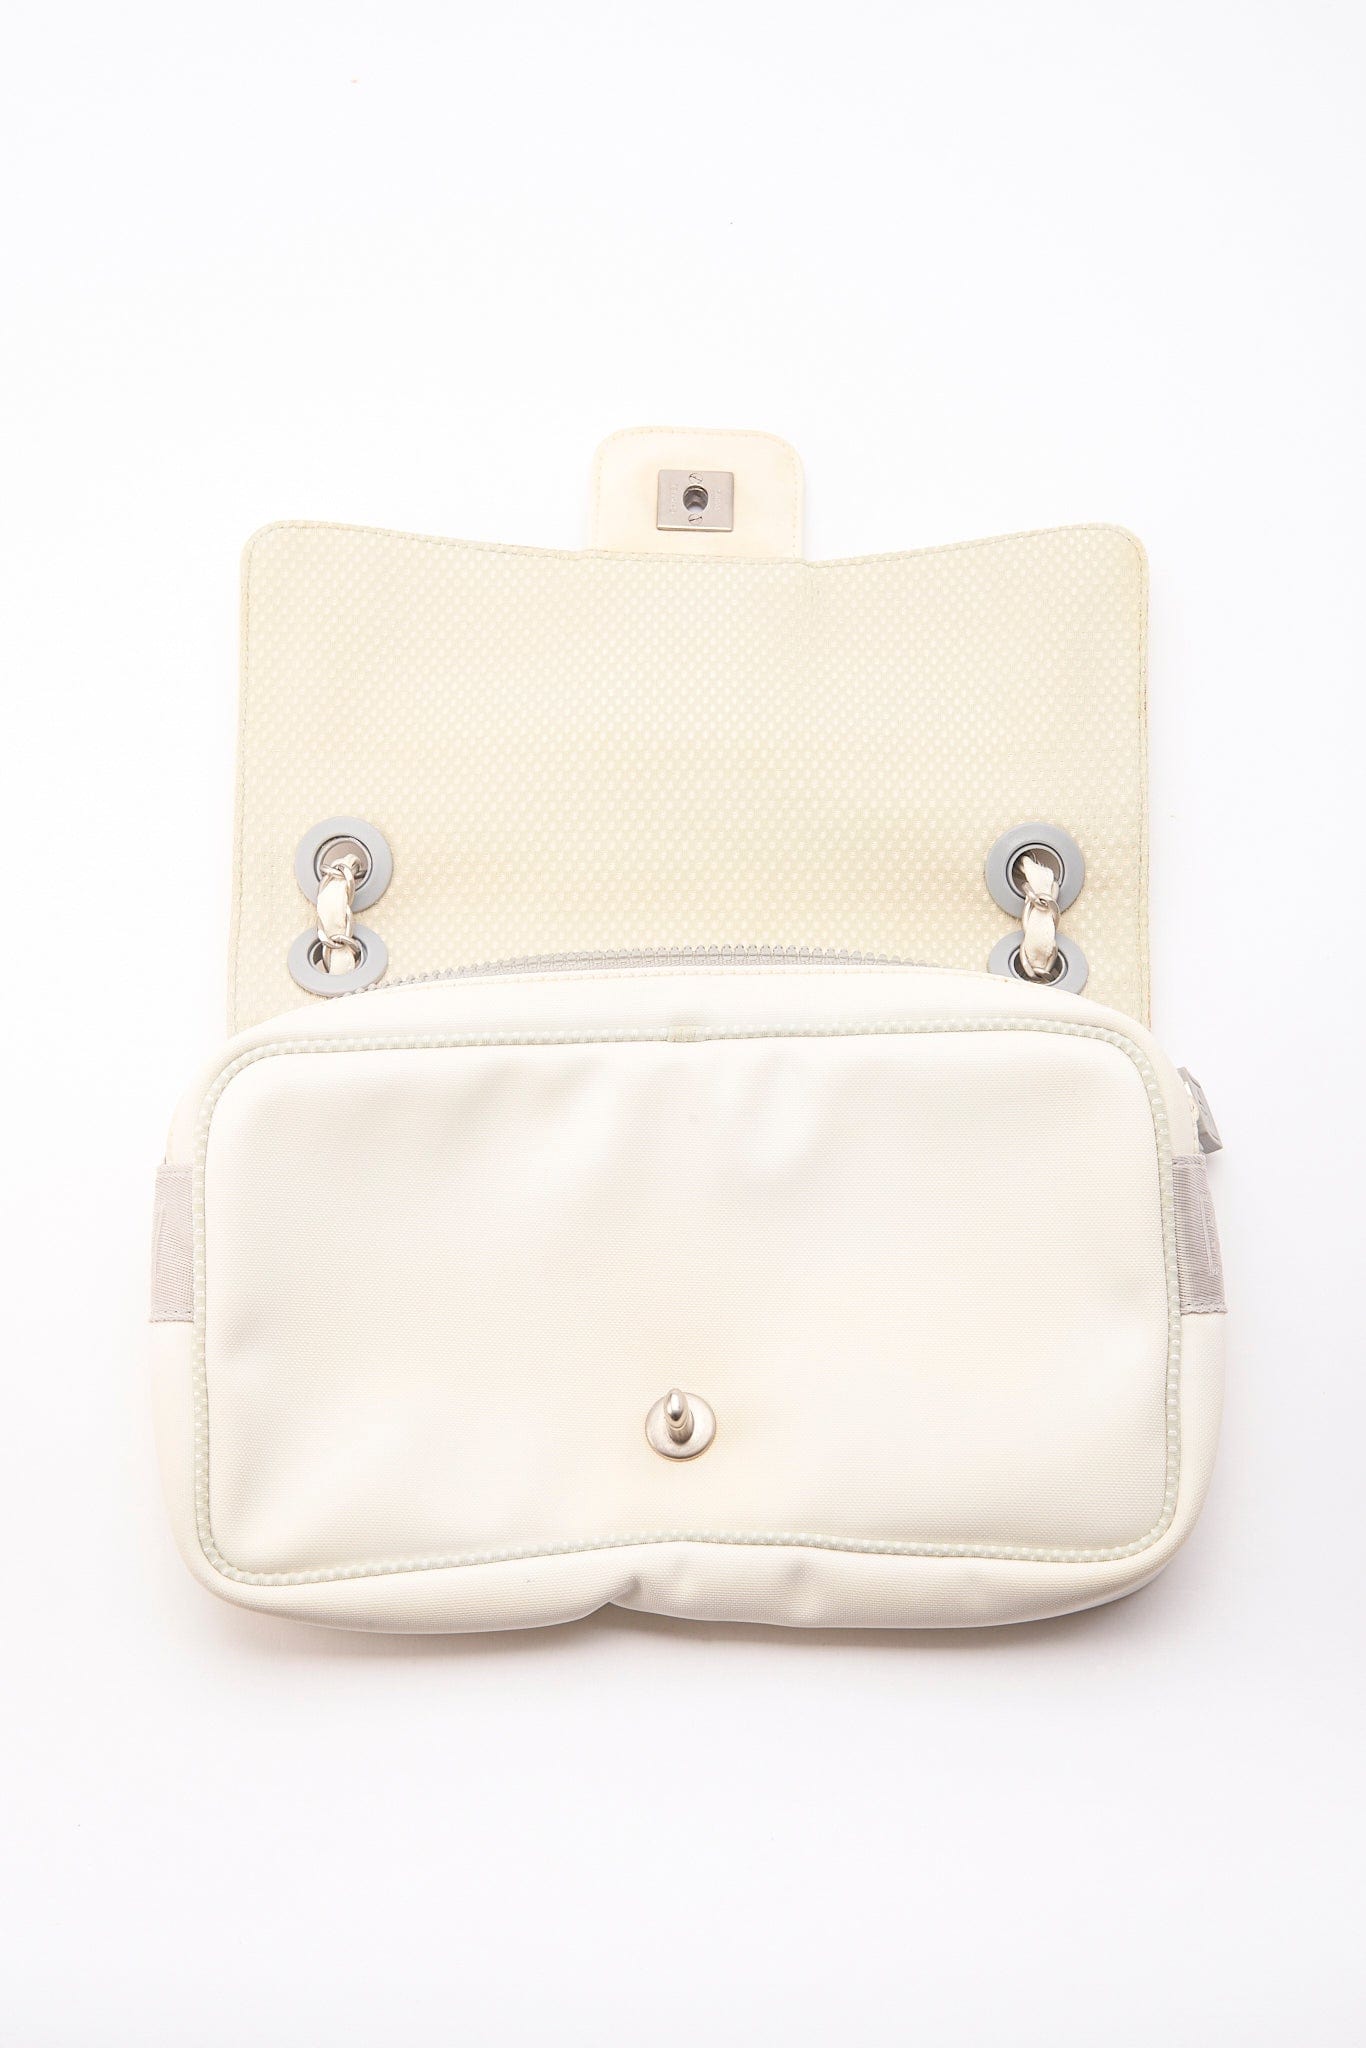 Chanel Sport White Floral Nylon Flap Bag